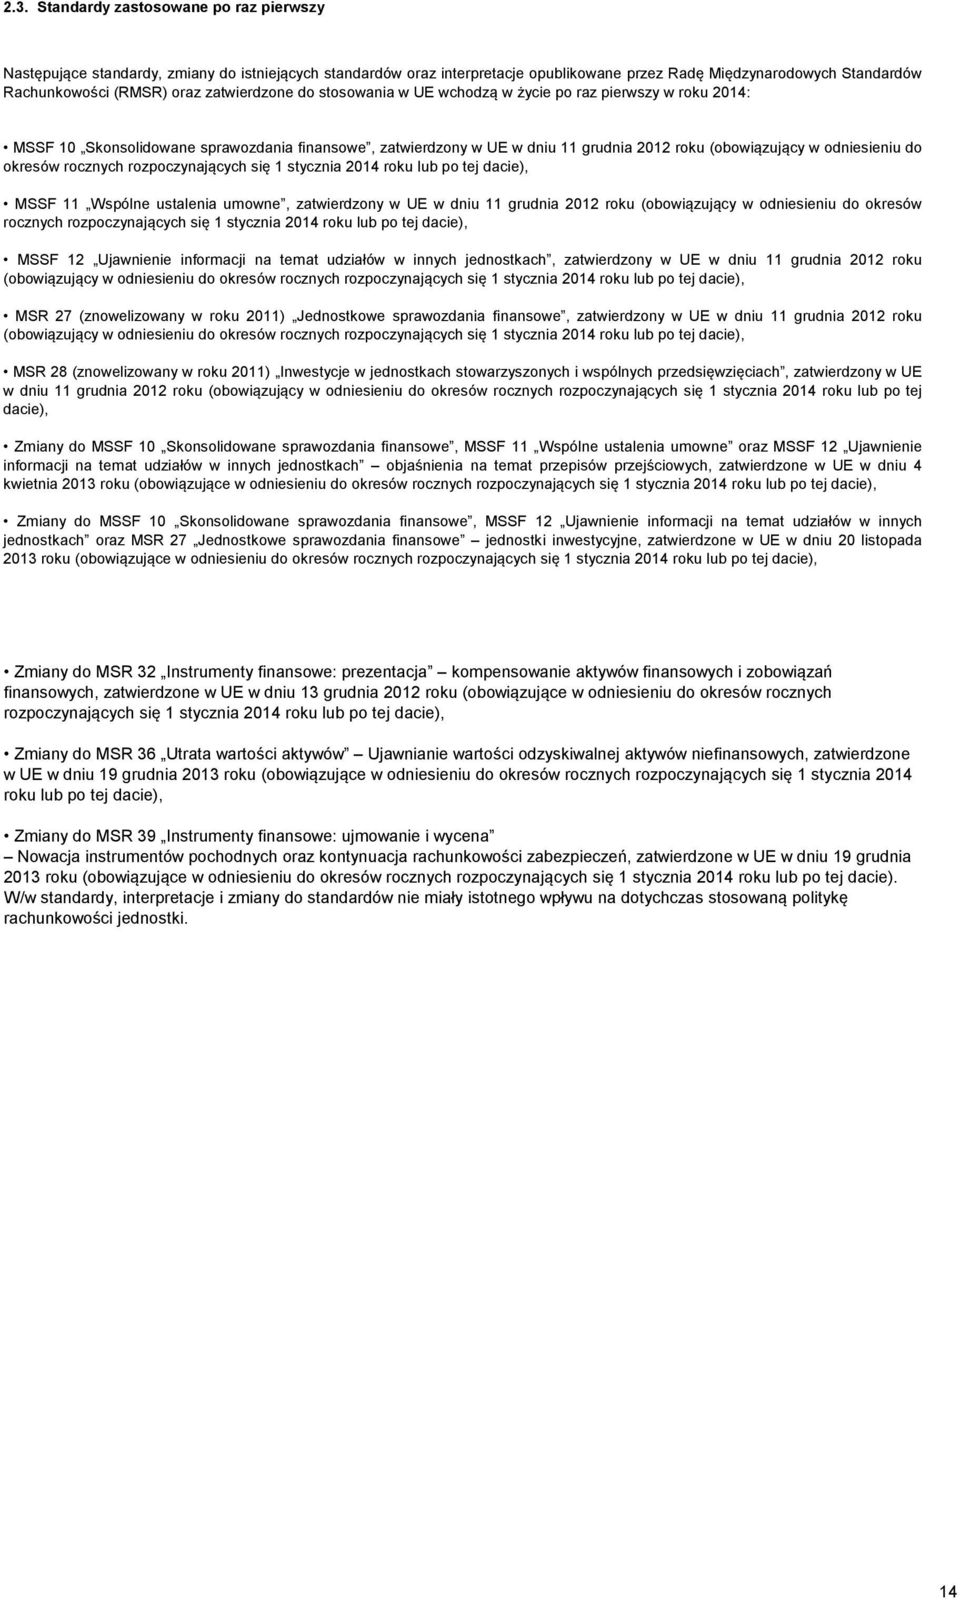 do okresów rocznych rozpoczynających się 1 stycznia 2014 roku lub po tej dacie), MSSF 11 Wspólne ustalenia umowne, zatwierdzony w UE w dniu 11 grudnia 2012 roku (obowiązujący w odniesieniu do okresów